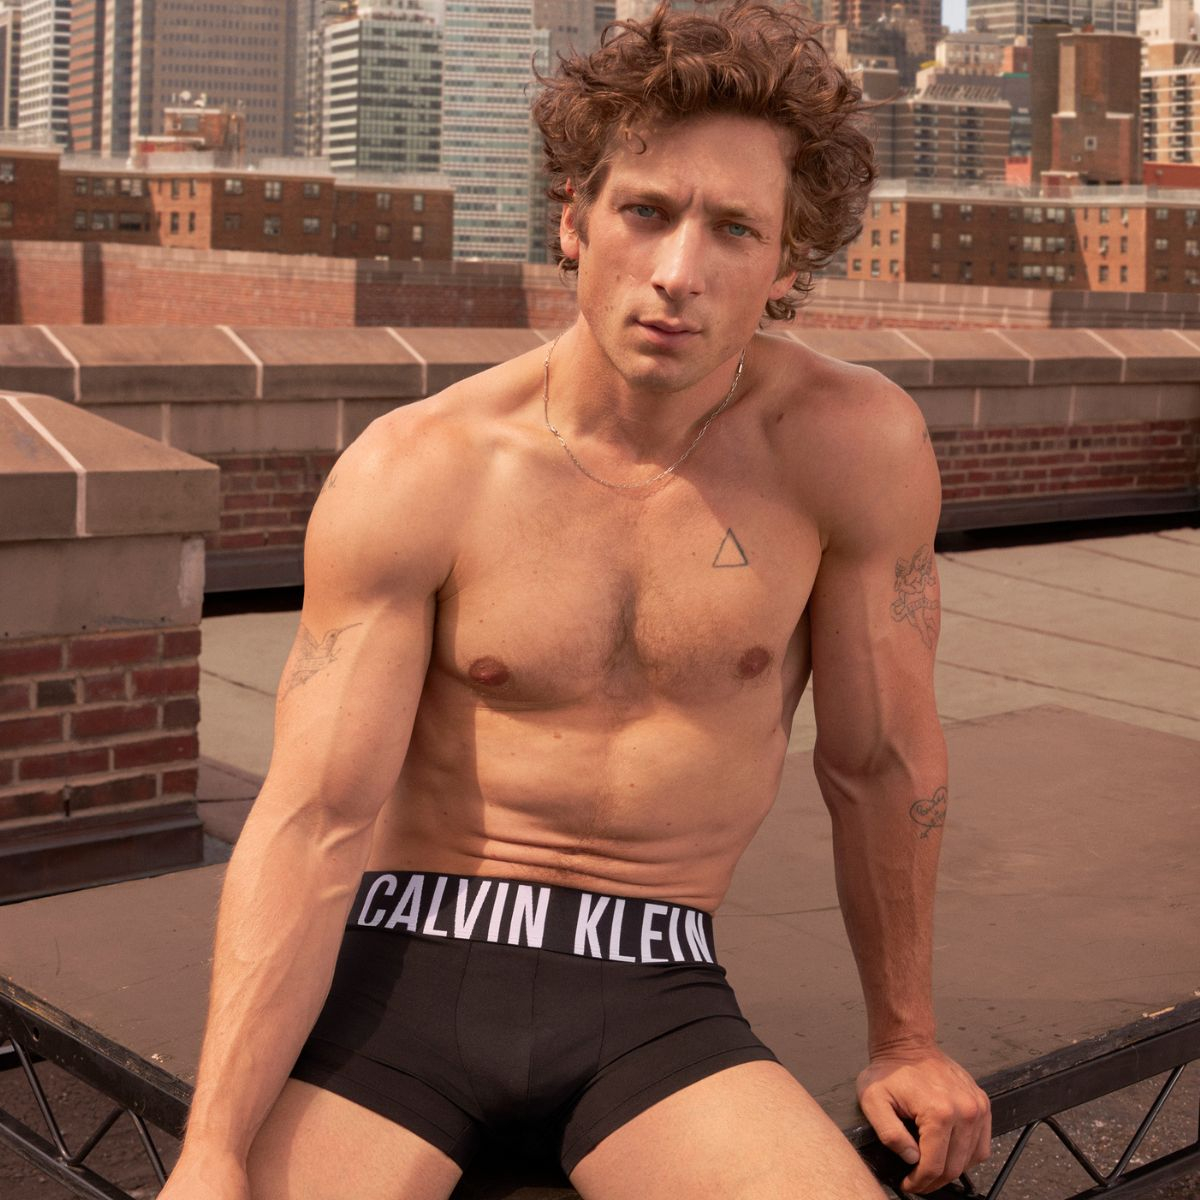 Jeremy Allen White Is the Newest Calvin Klein Underwear Model! See